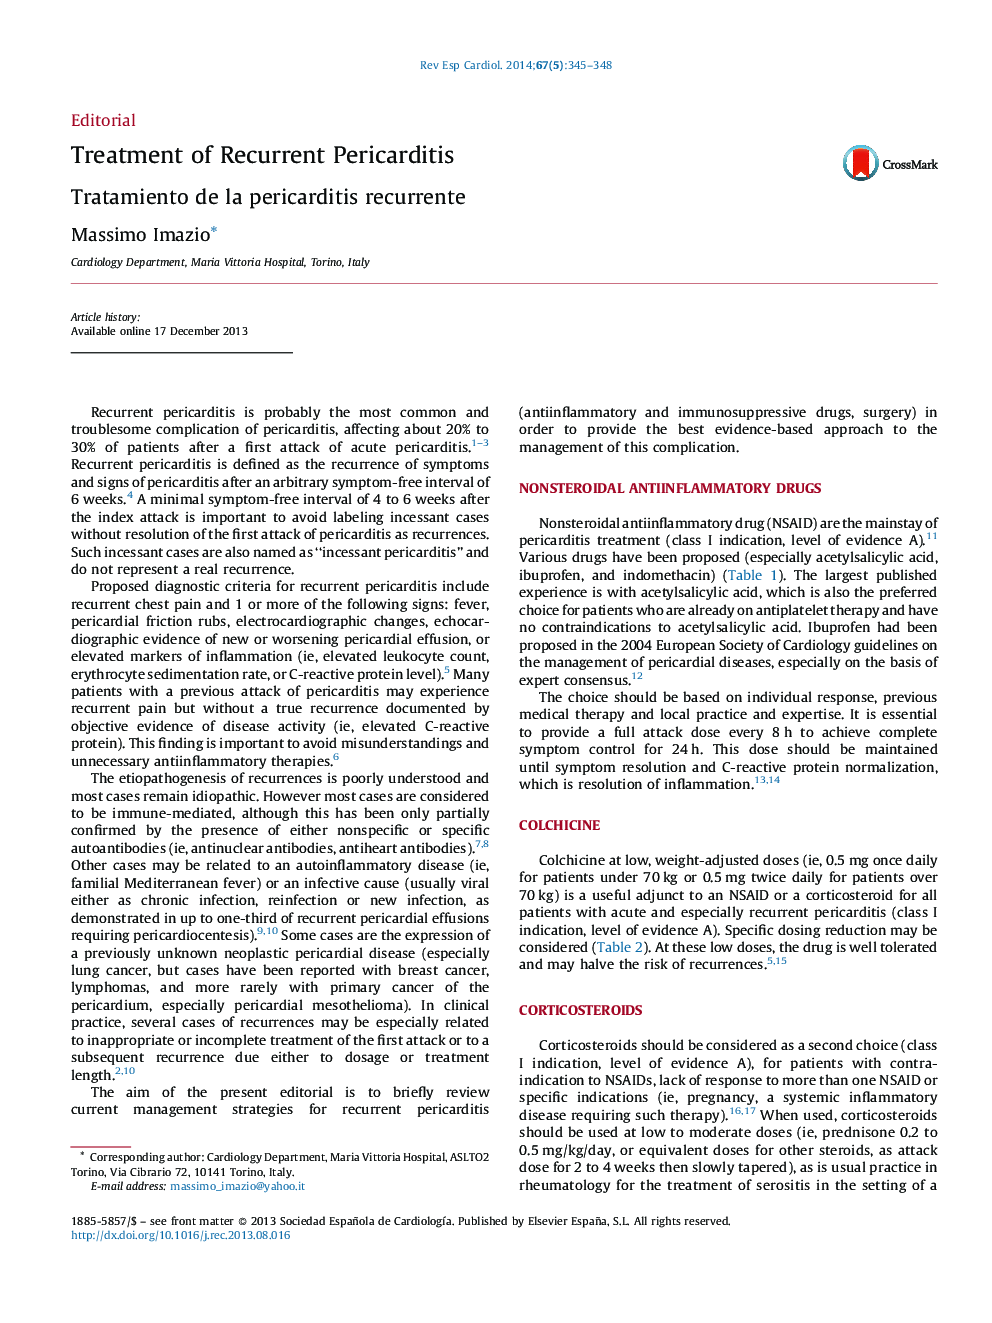 Treatment of Recurrent Pericarditis